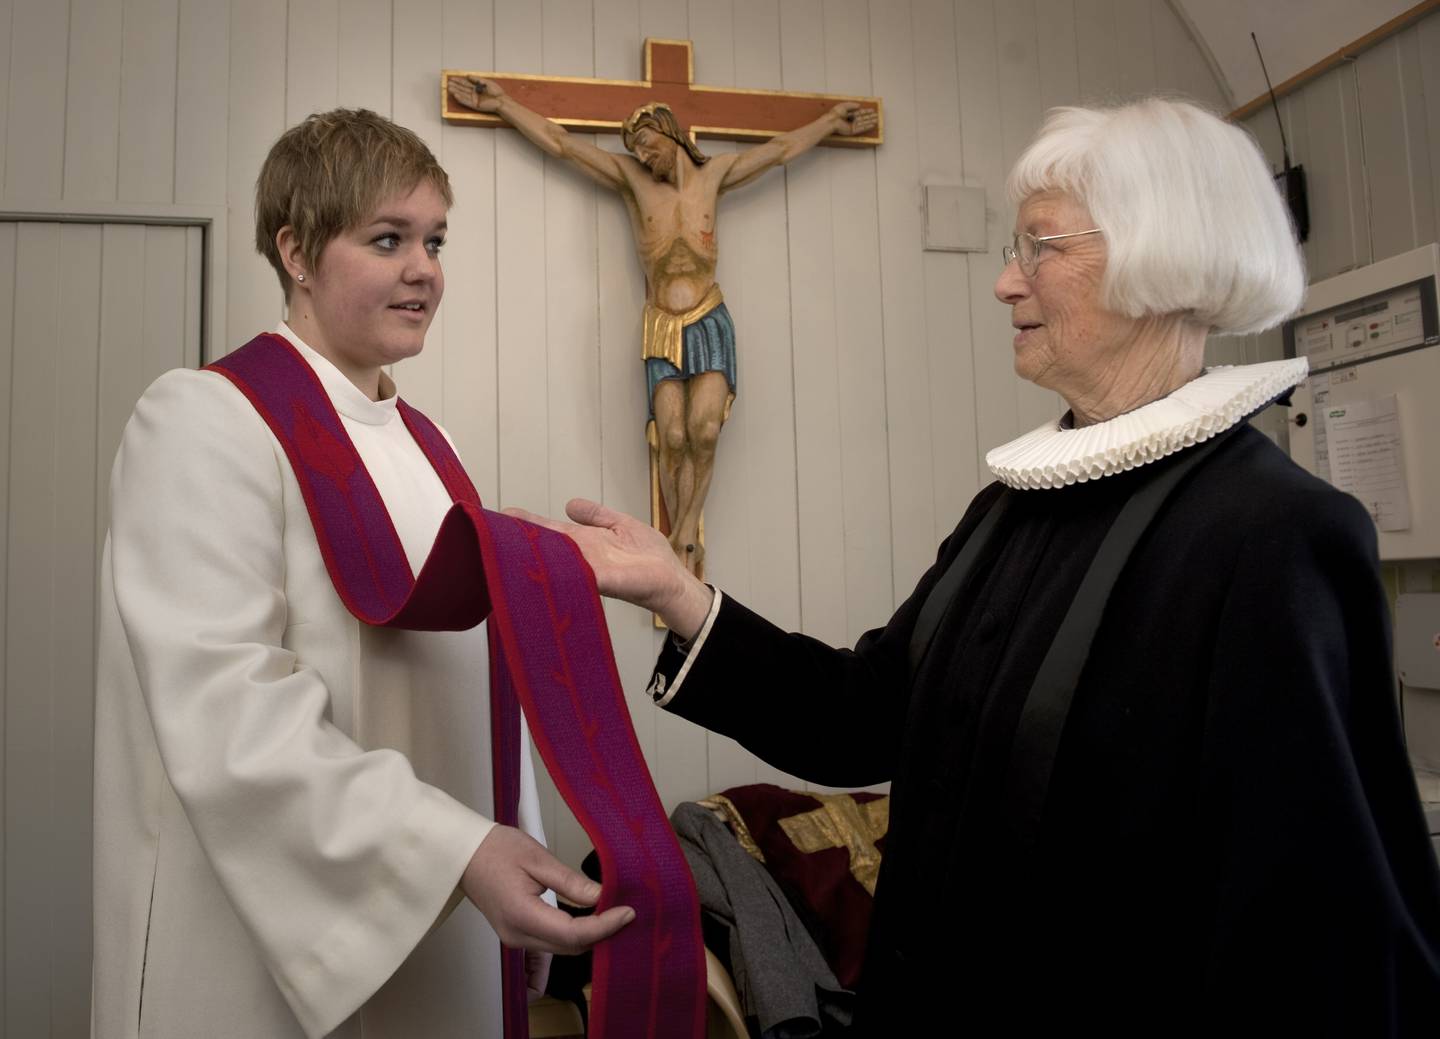 kvinnelige prester vang kirke stine kiil saga og svanaug lindman